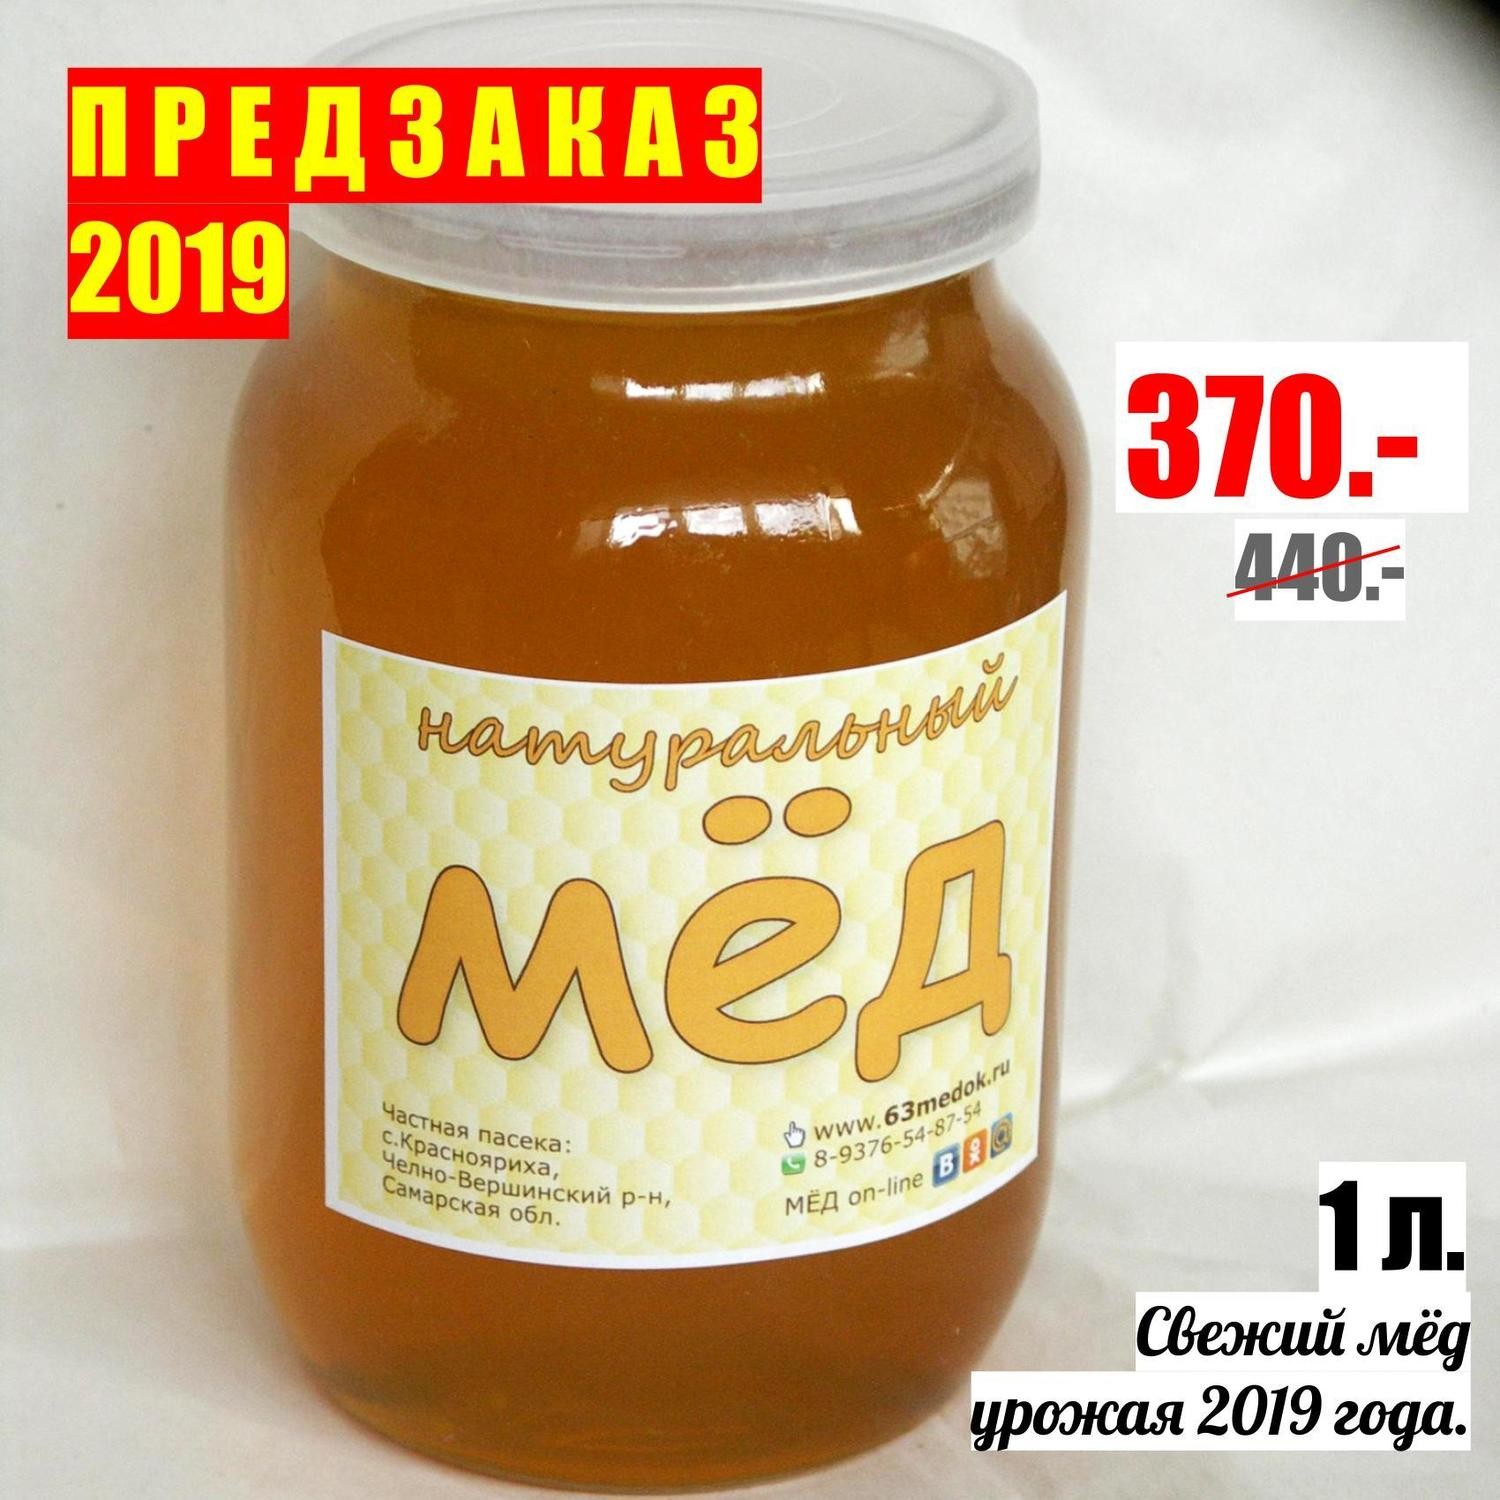 ПРЕДЗАКАЗ 2019 - 1л. свежего мёда